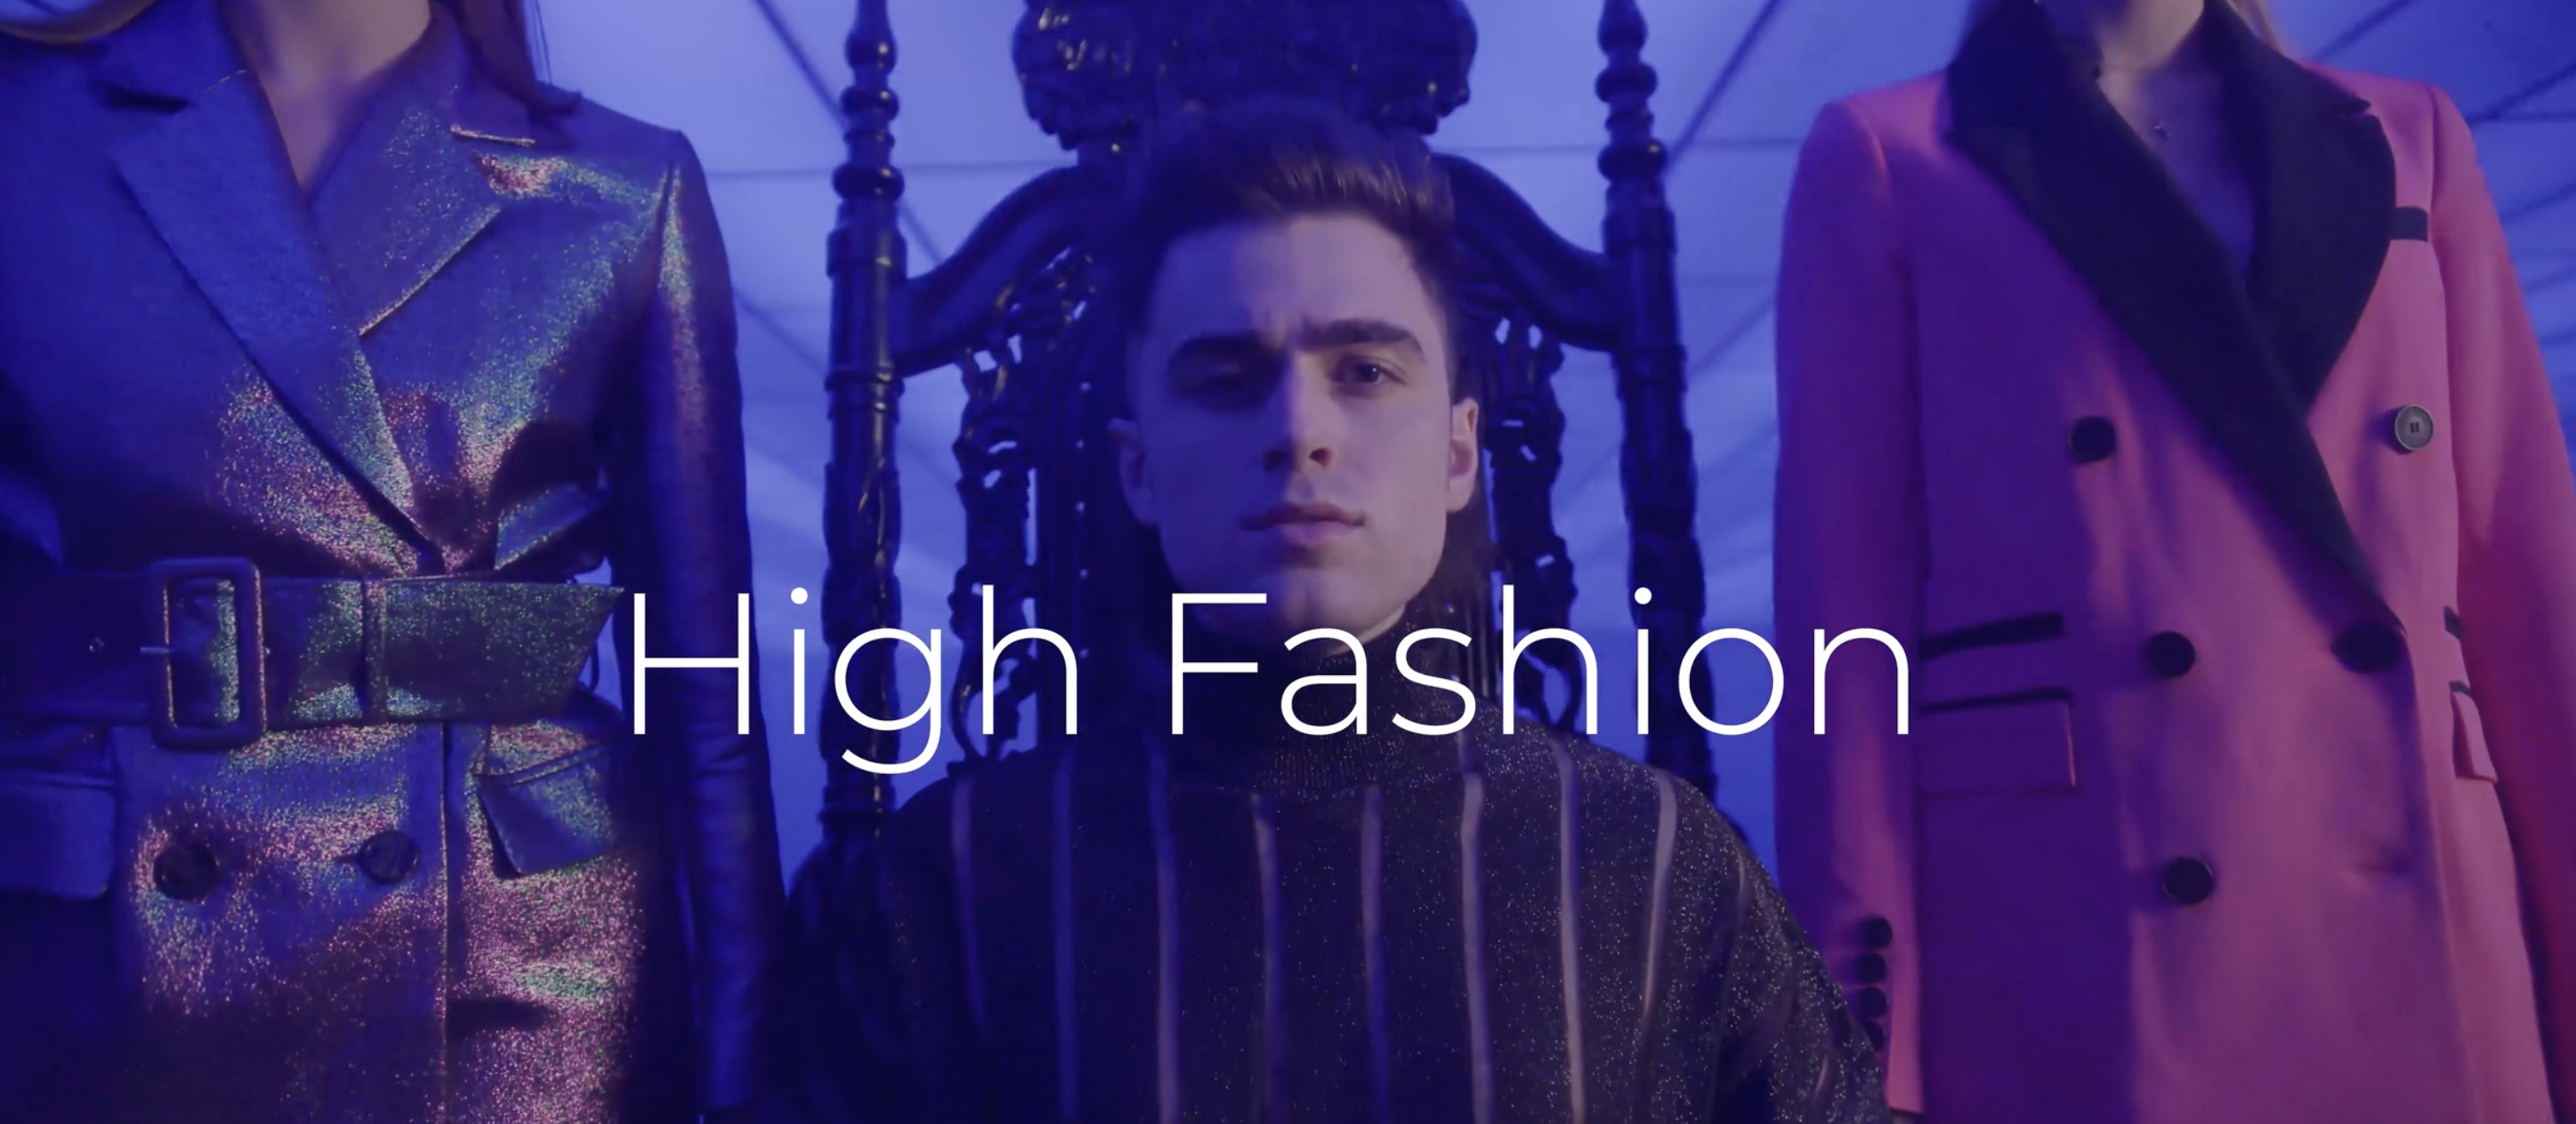 High Fashion – Music Video